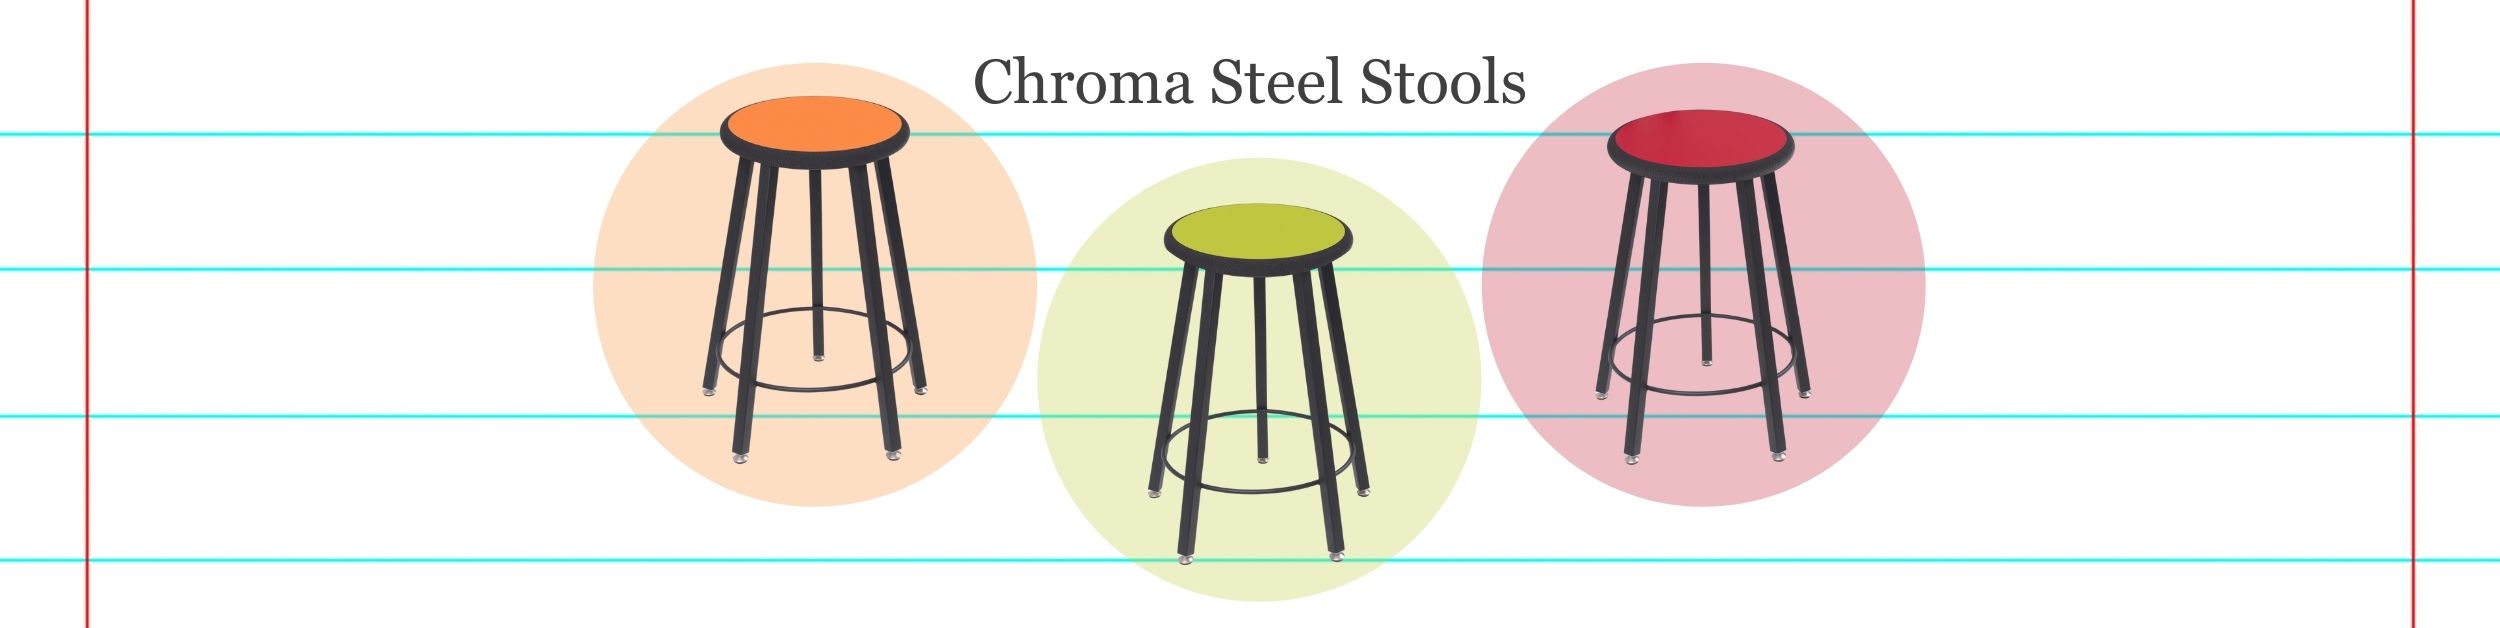 Chroma_Steel_Stools_Full_Banner_UPDATED-1.jpg